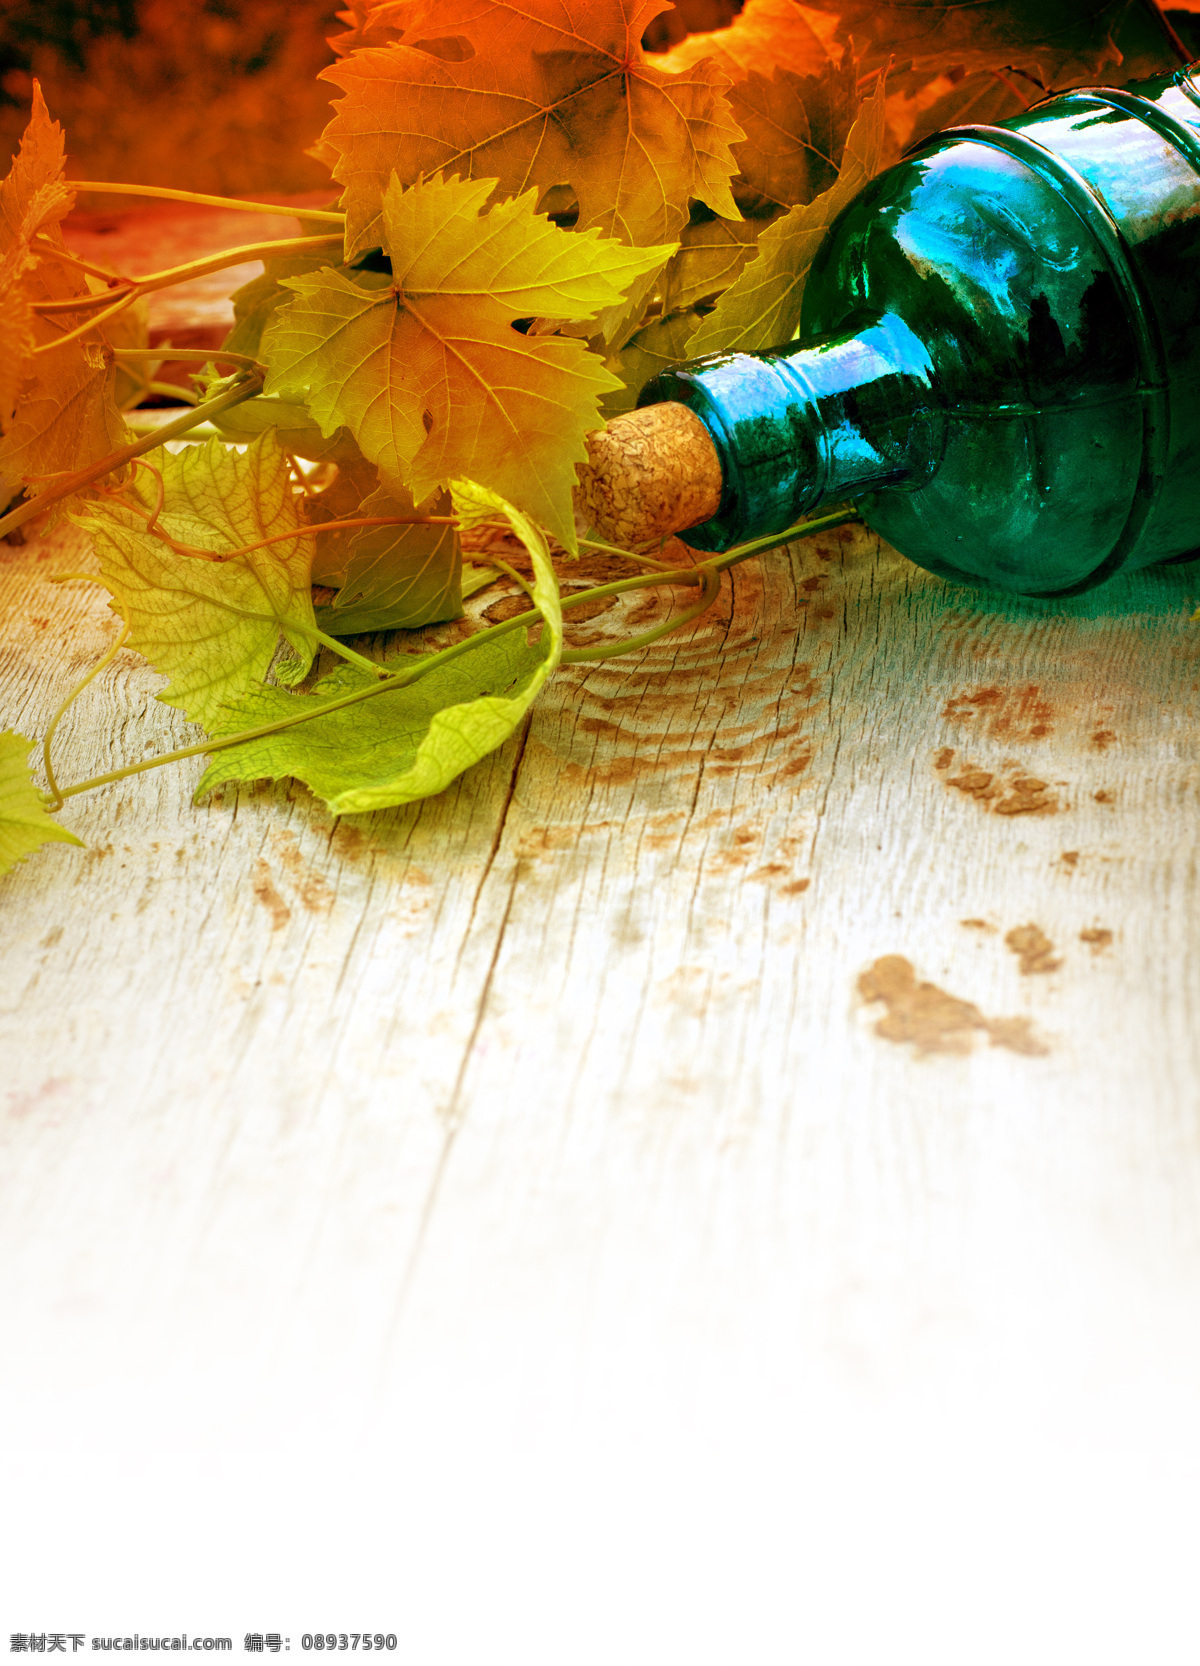 玻璃 酒瓶 葡萄 叶 葡萄酒 木板背景 木纹背景 葡萄叶 葡萄藤 玻璃瓶子 酒水饮料 餐饮美食 白色